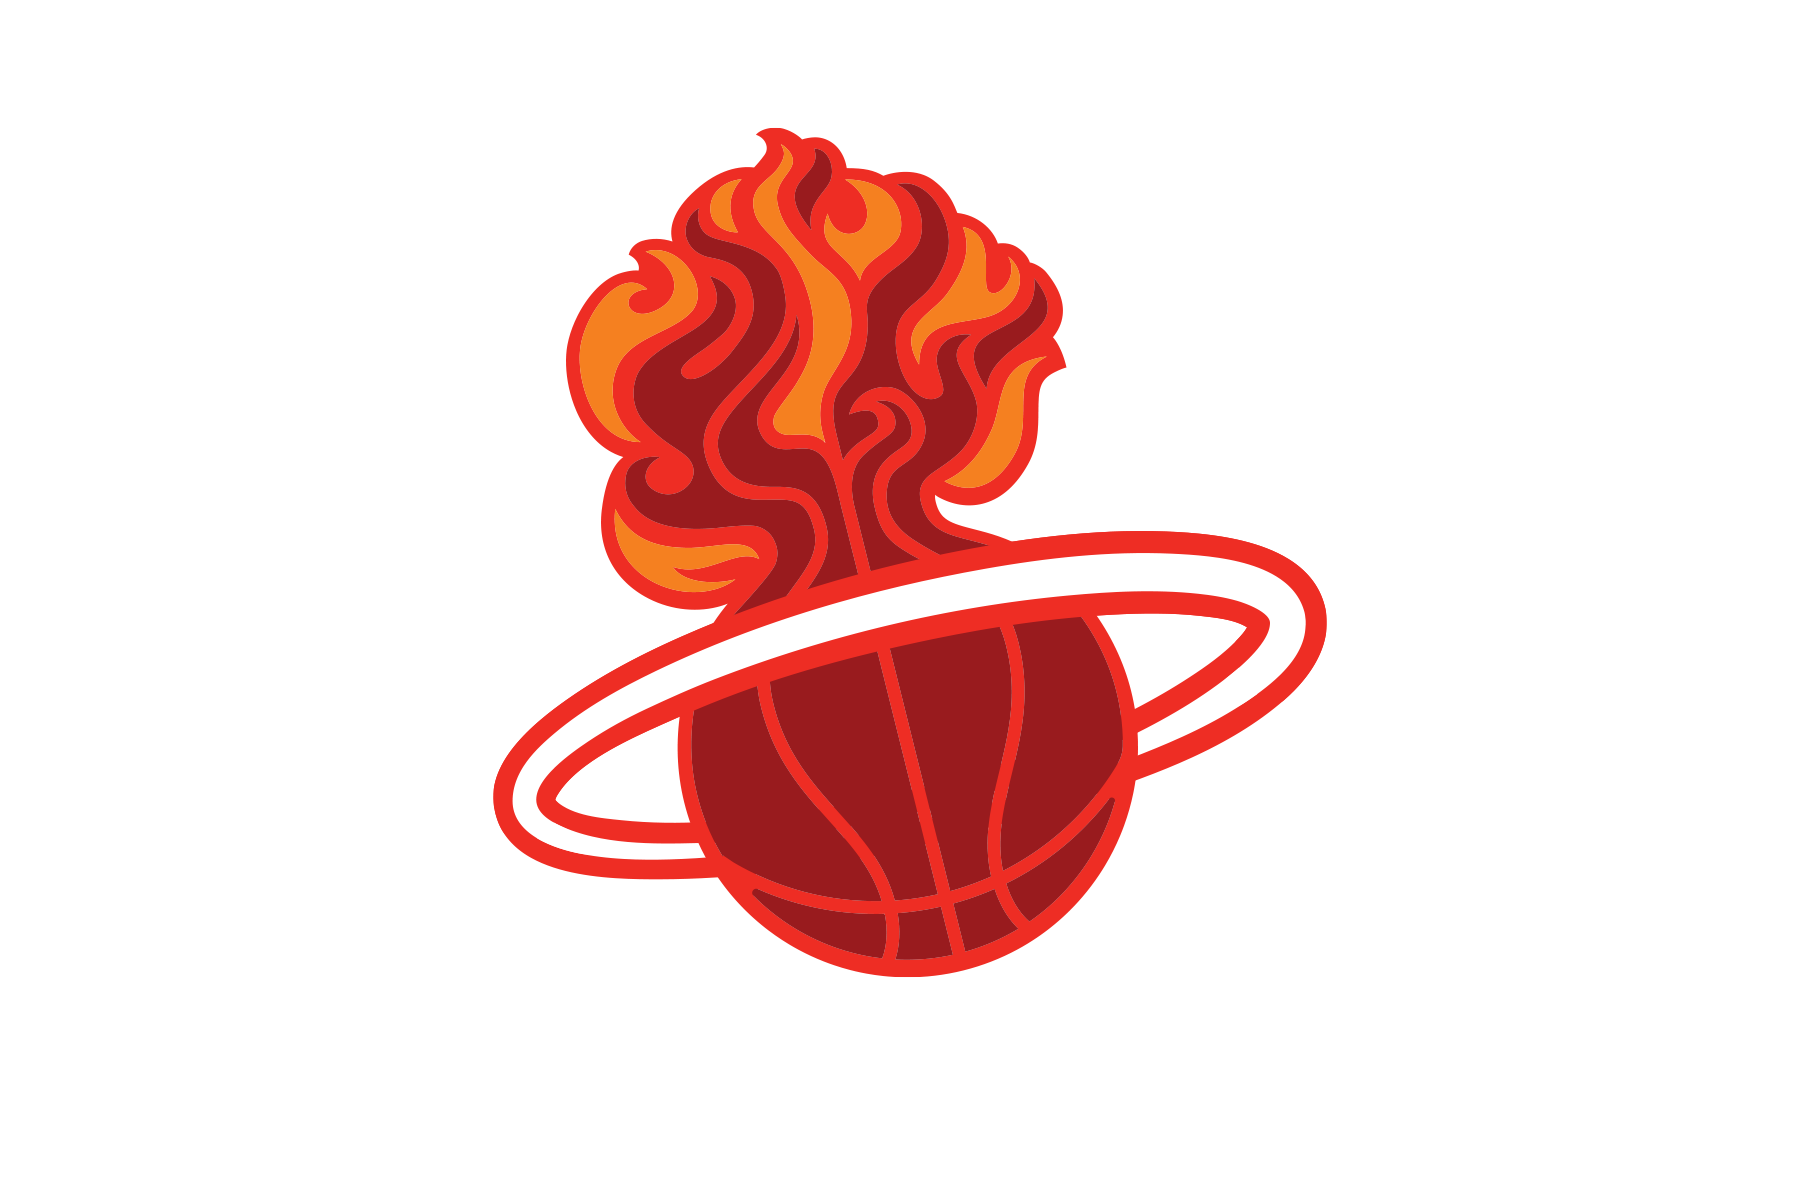 Michael Weinstein NBA Logo Redesigns: Miami Heat